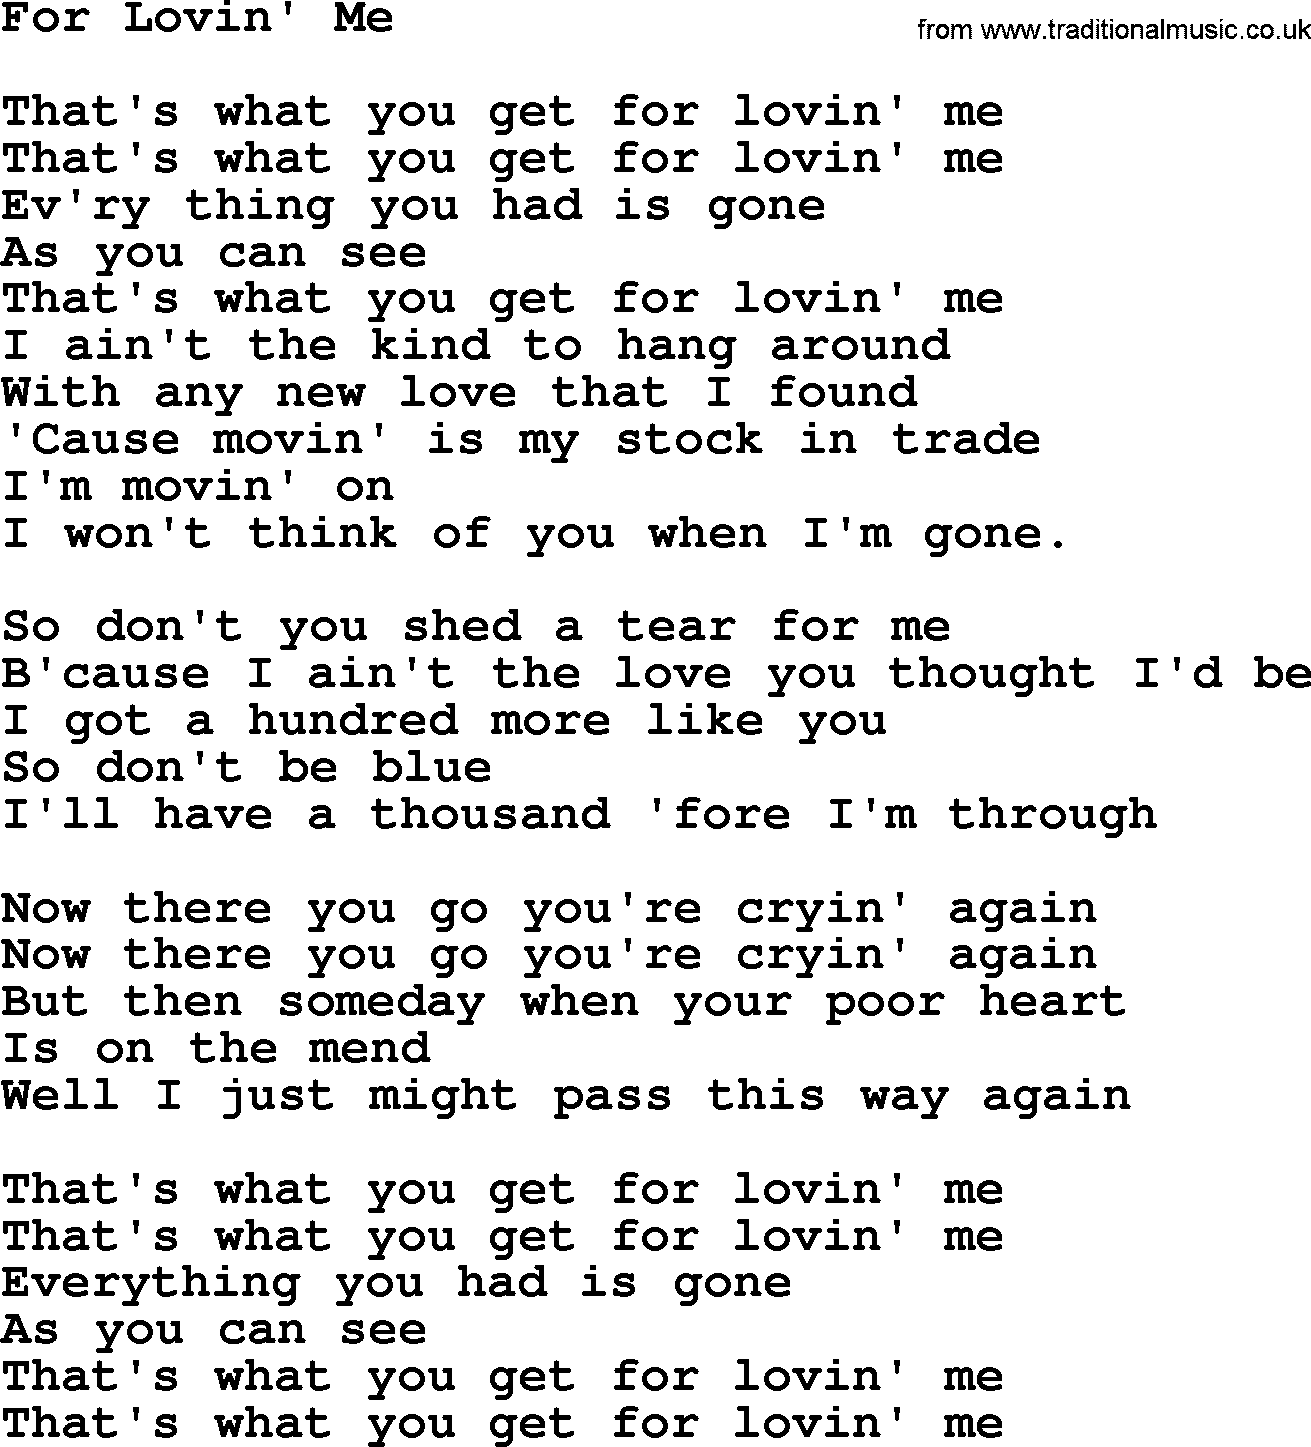 Gordon Lightfoot song For Lovin' Me, lyrics